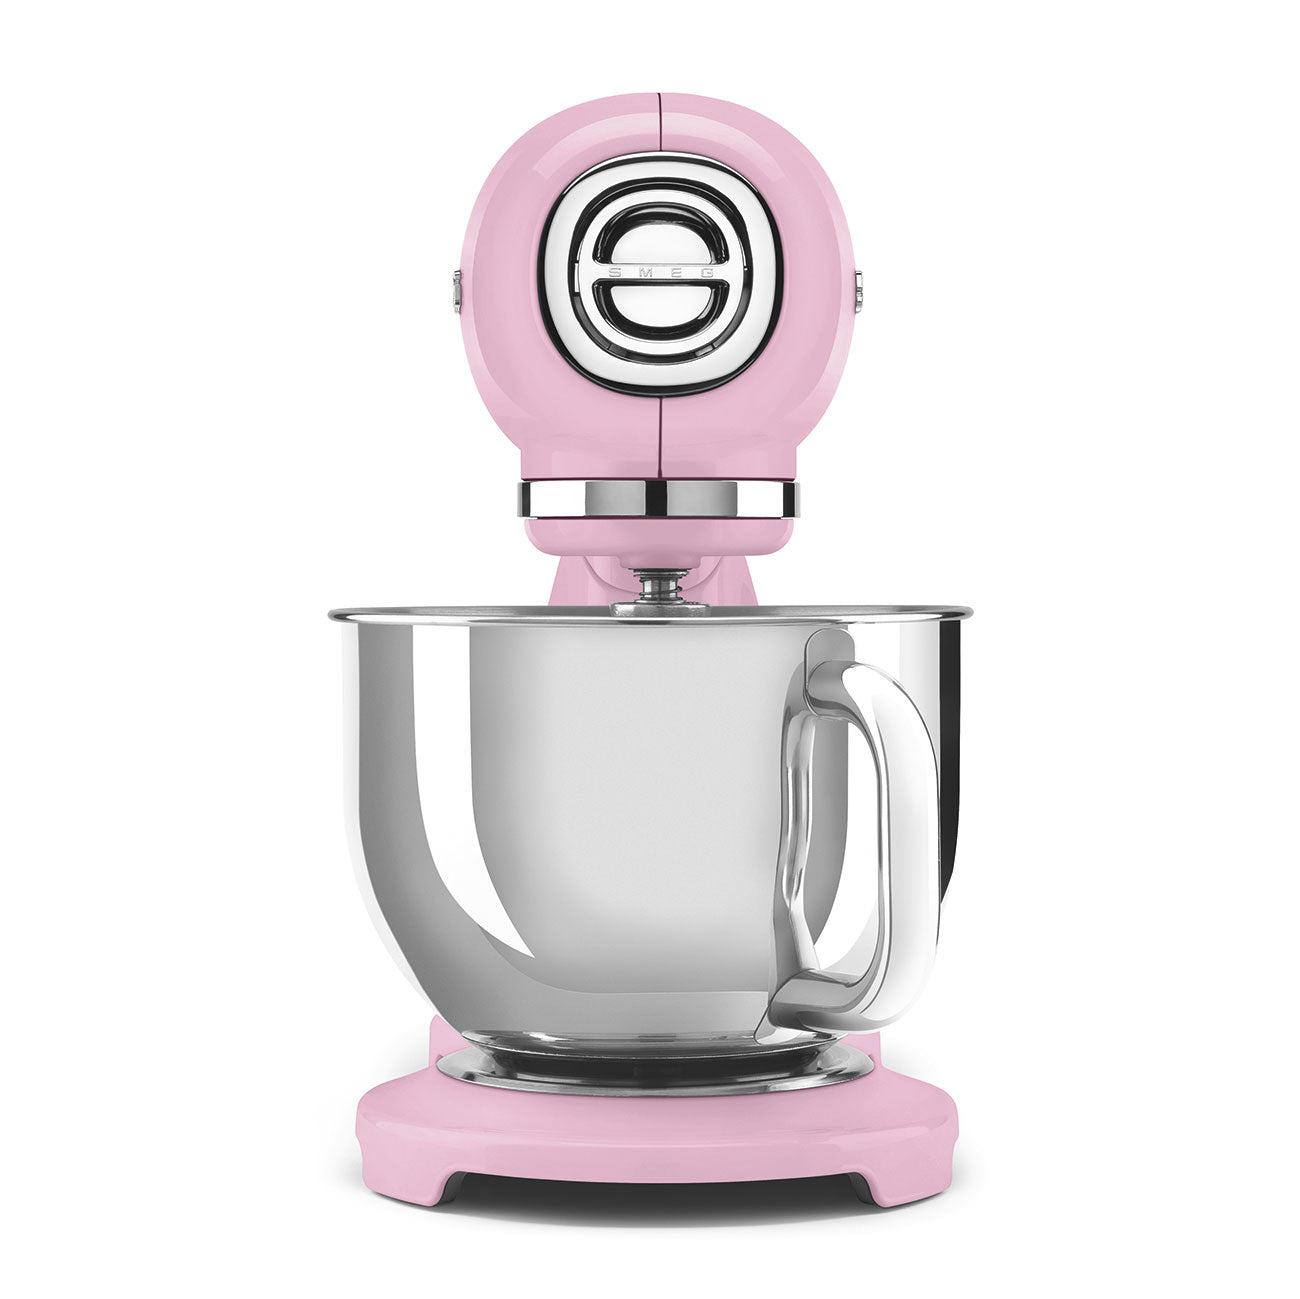 SMEG Smeg SMF03PKEU Küchenmaschine Pink Design Küchenmaschine Bestseller|Kleingeräte|Küchenmaschine|Pink|smf03 (800 Watt) 50\'s